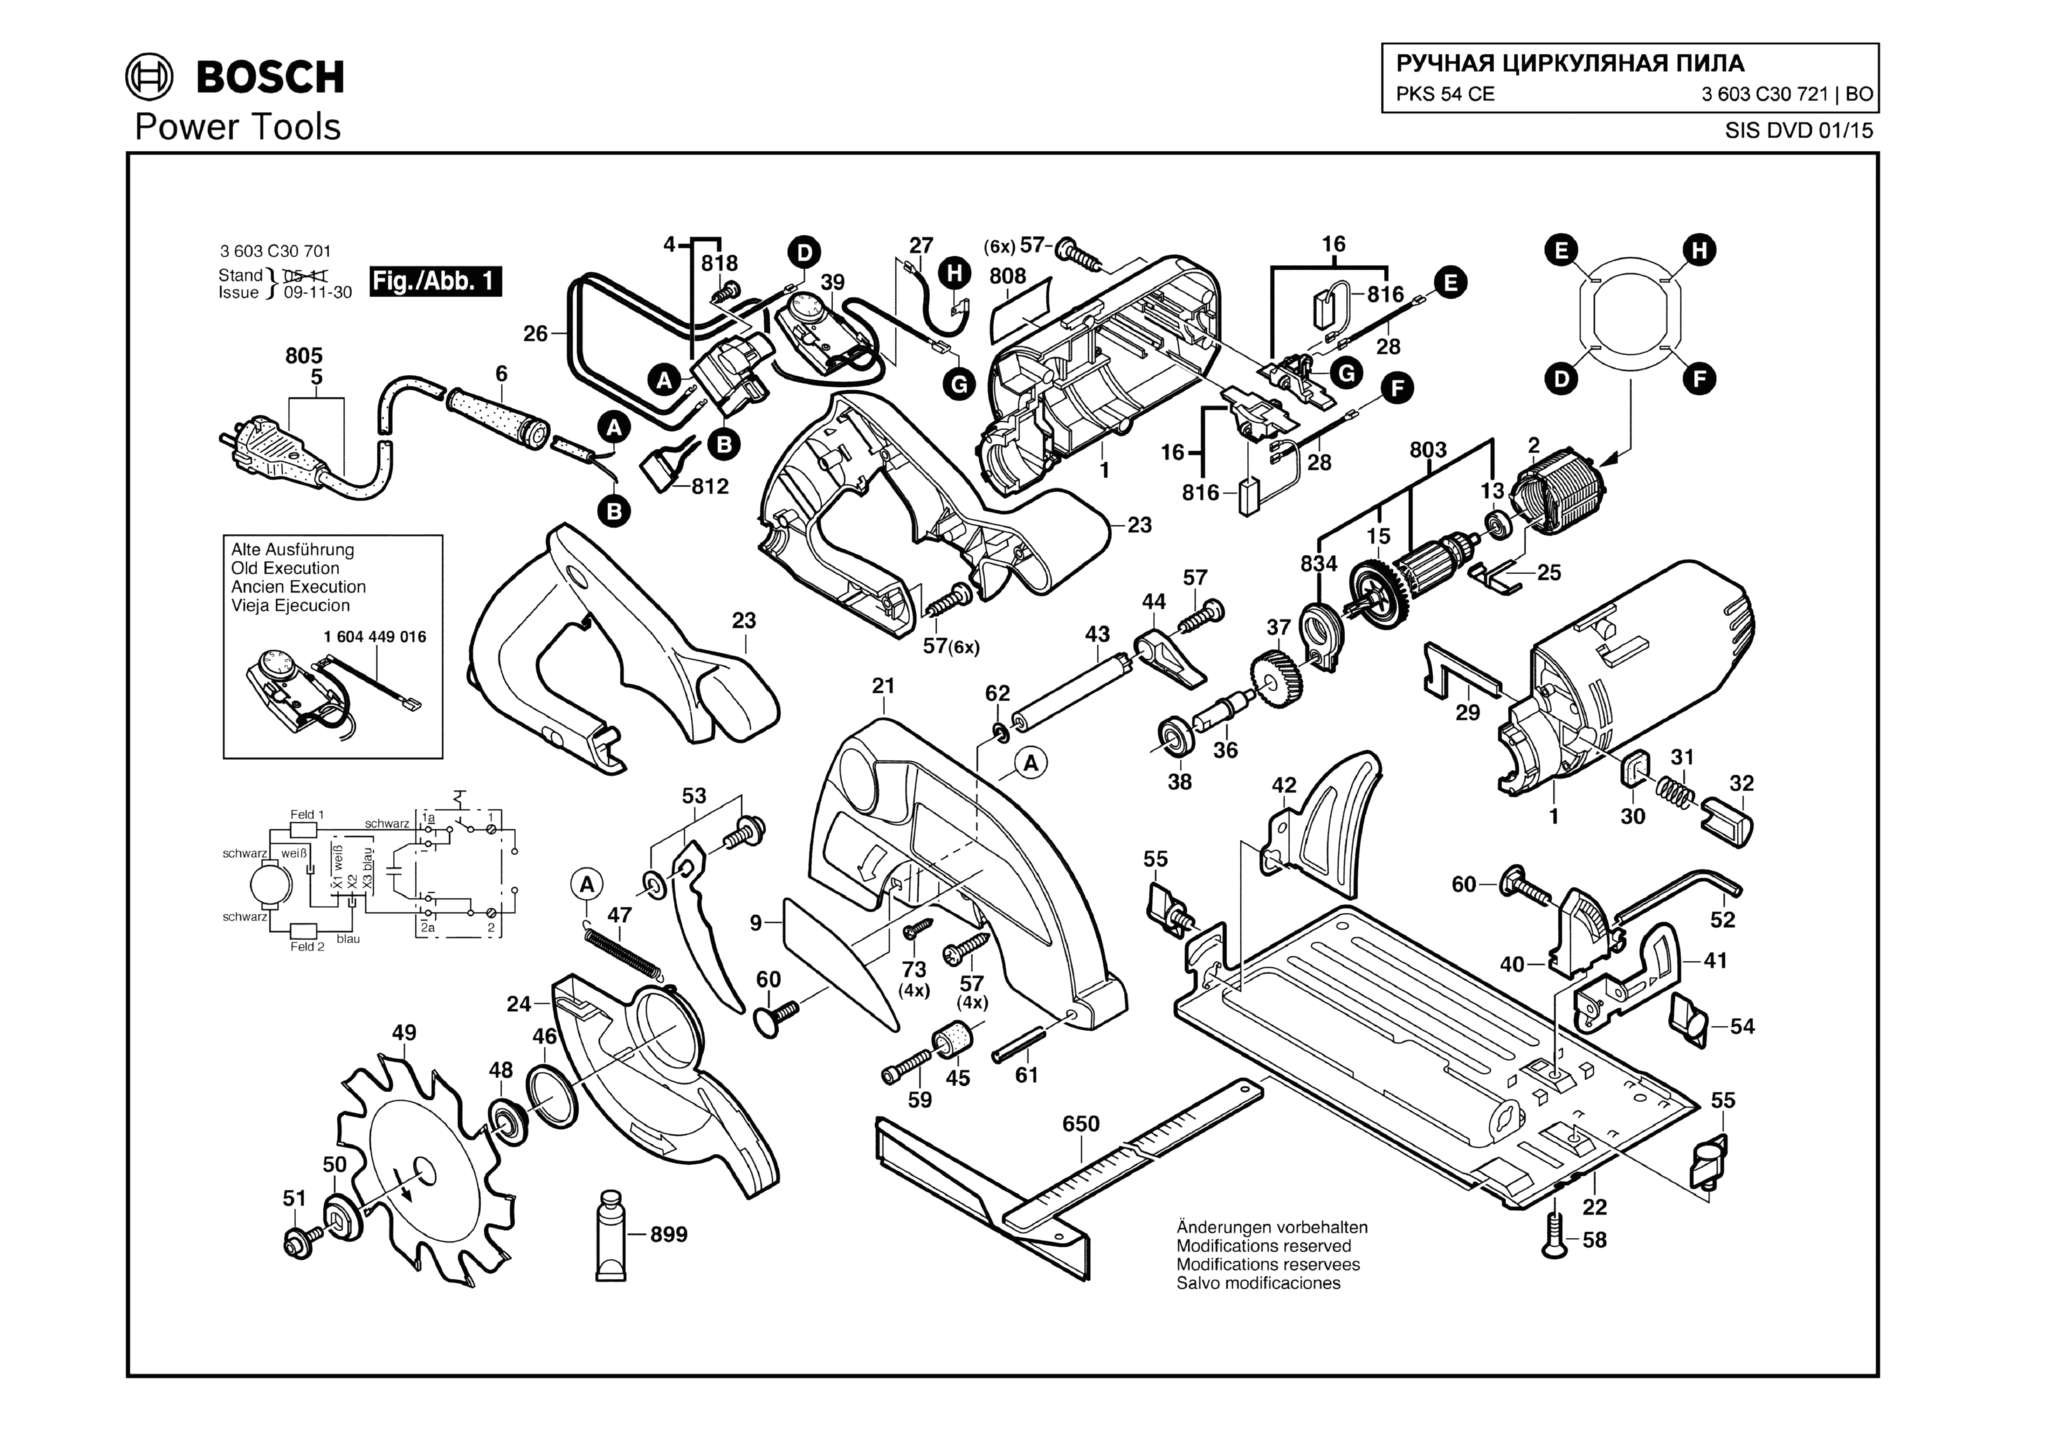 Запчасти, схема и деталировка Bosch PKS 54 CE (ТИП 3603C30721)